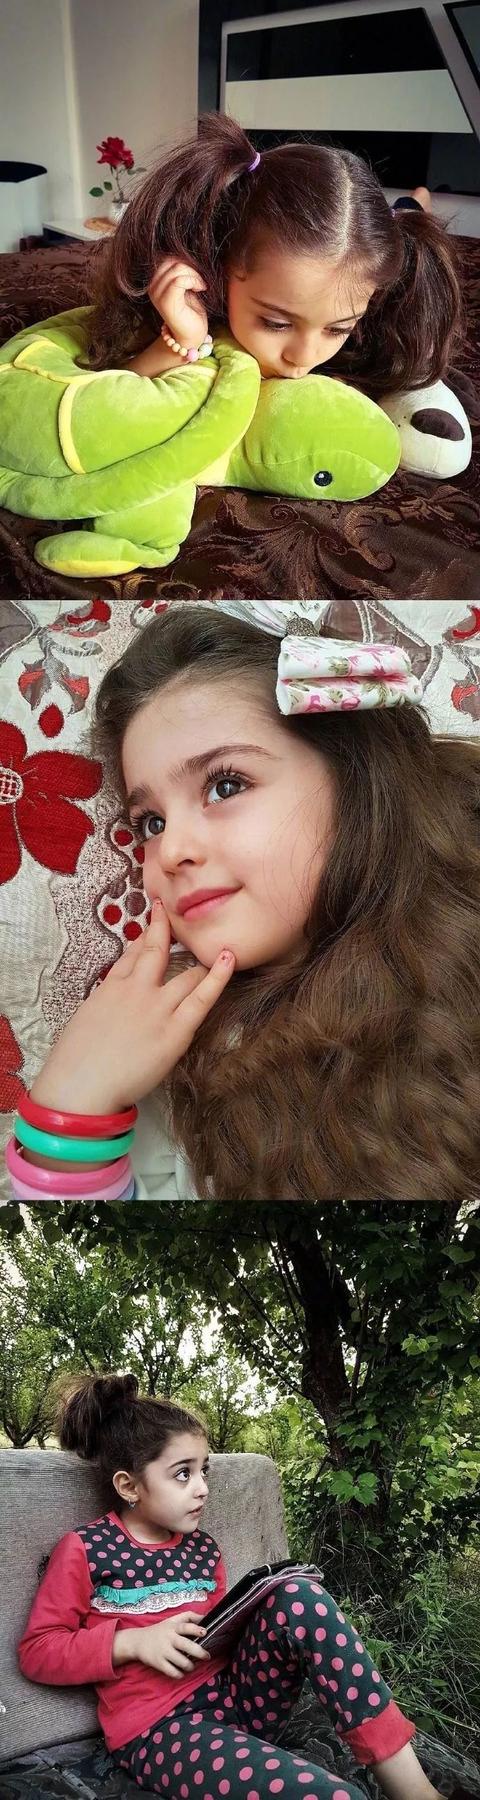 伊朗8岁小女孩被称为“全球最美”！因太美，父亲辞职做贴身保镖